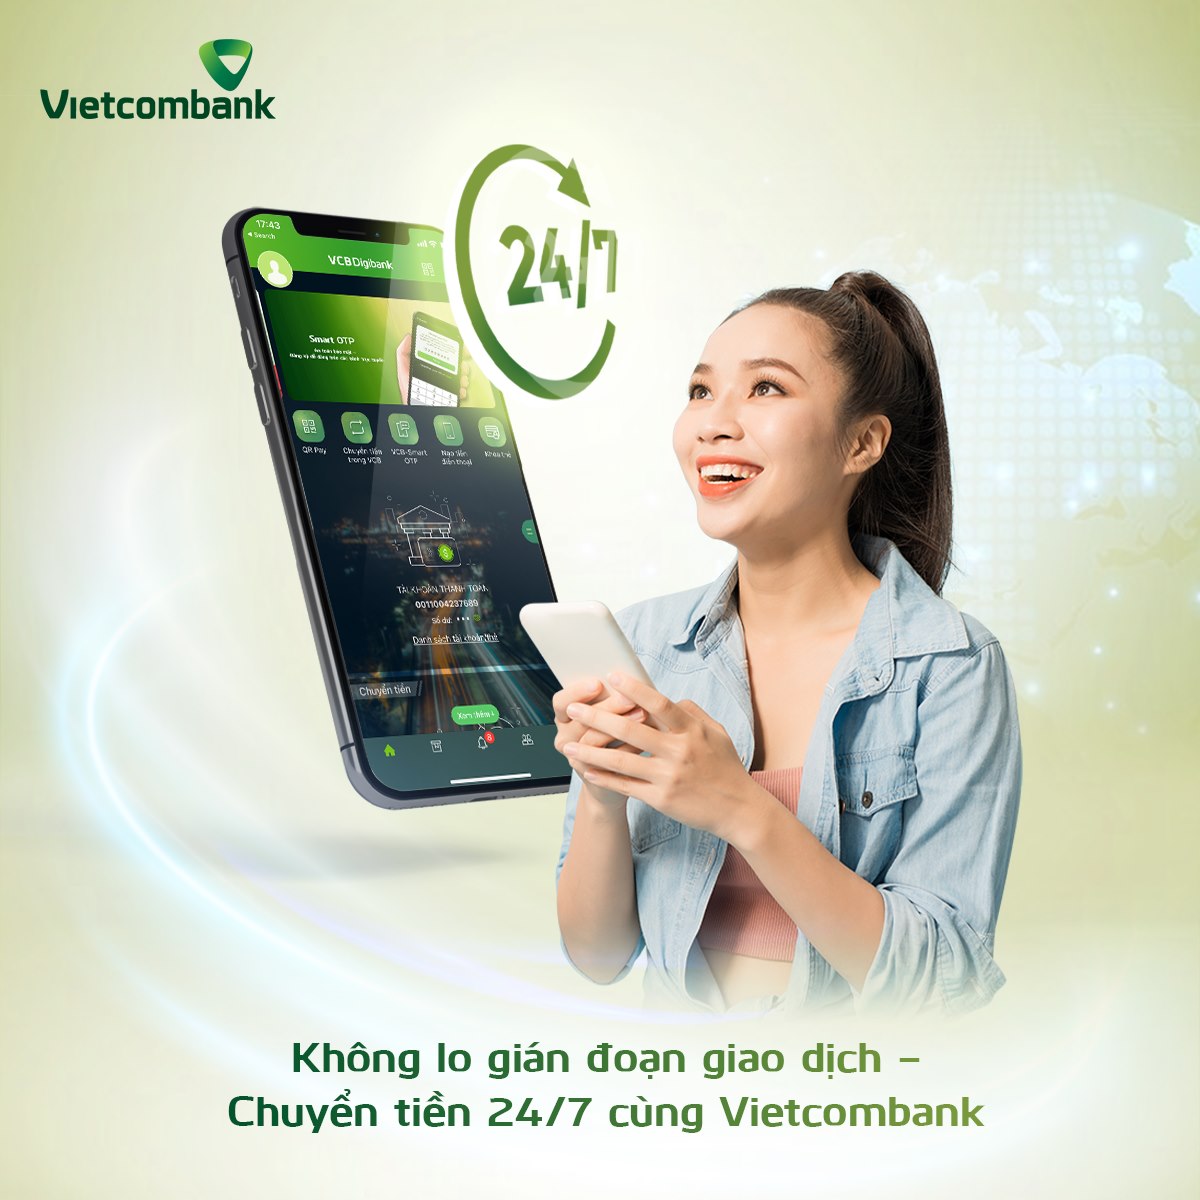 SMS Vietcombank còn nhiều tính năng hữu ích khác nhau